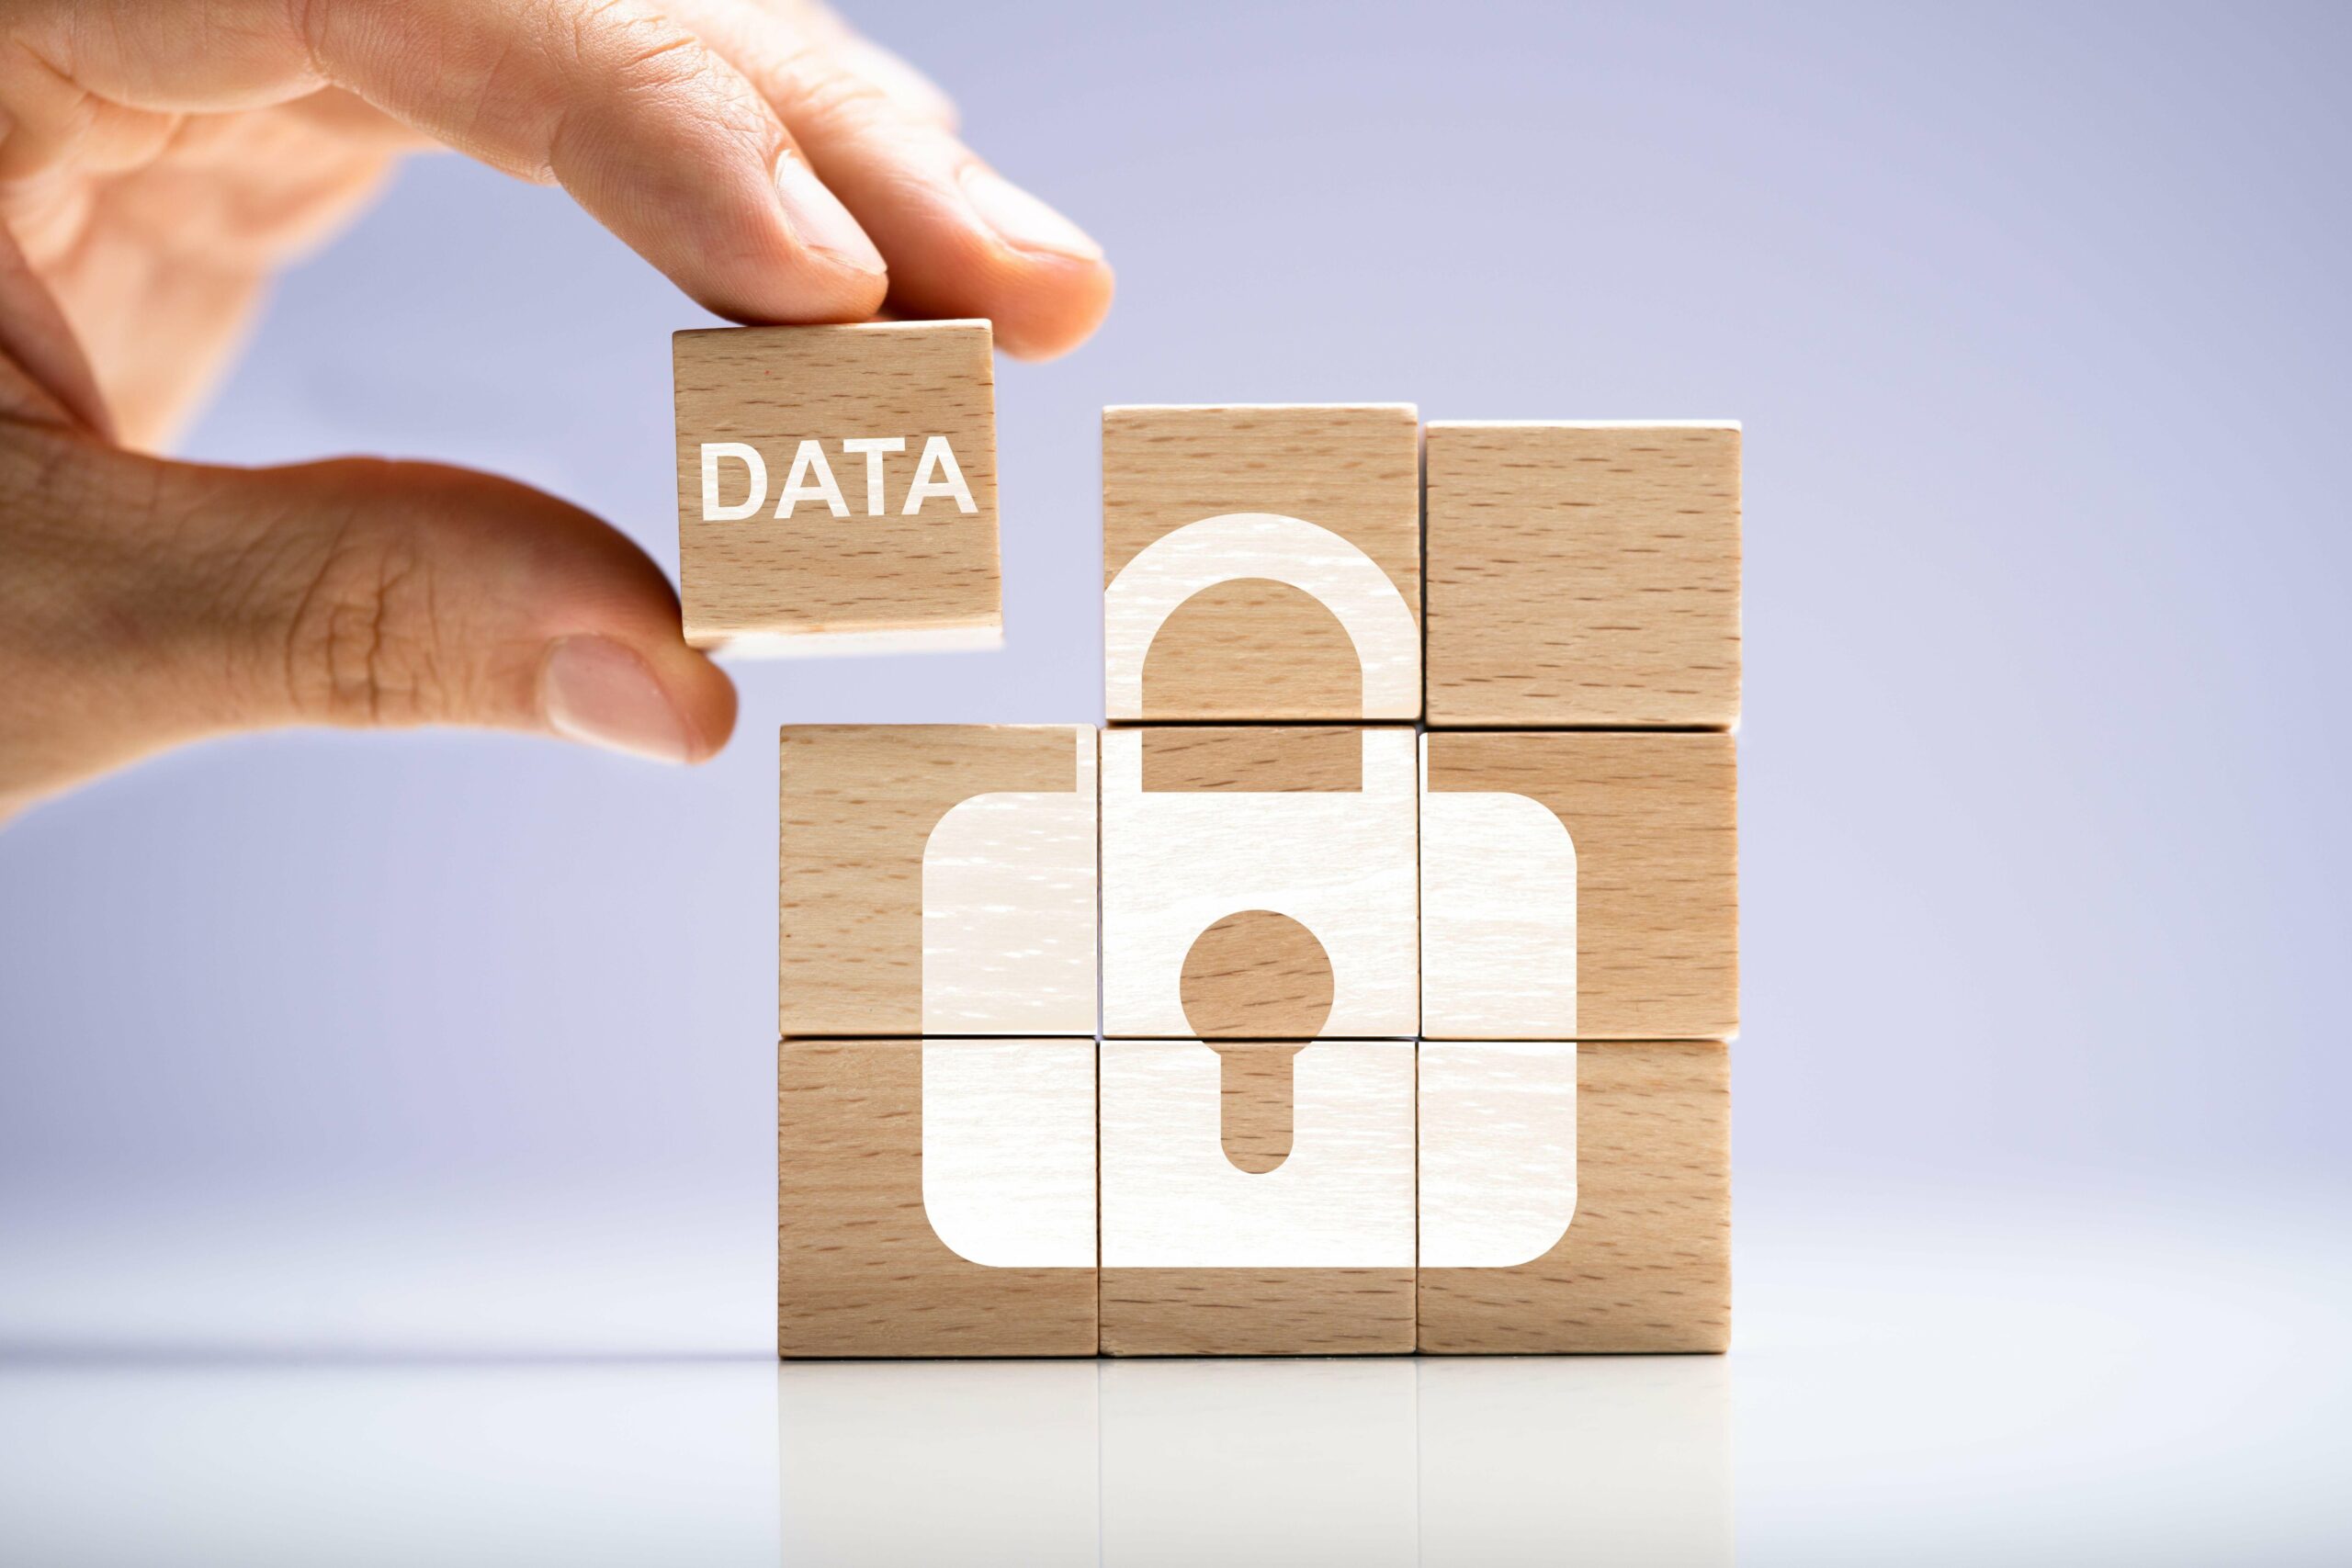 भविष्य-प्रूफ़ डेटा गोपनीयता के लिए 3 रणनीतियाँ